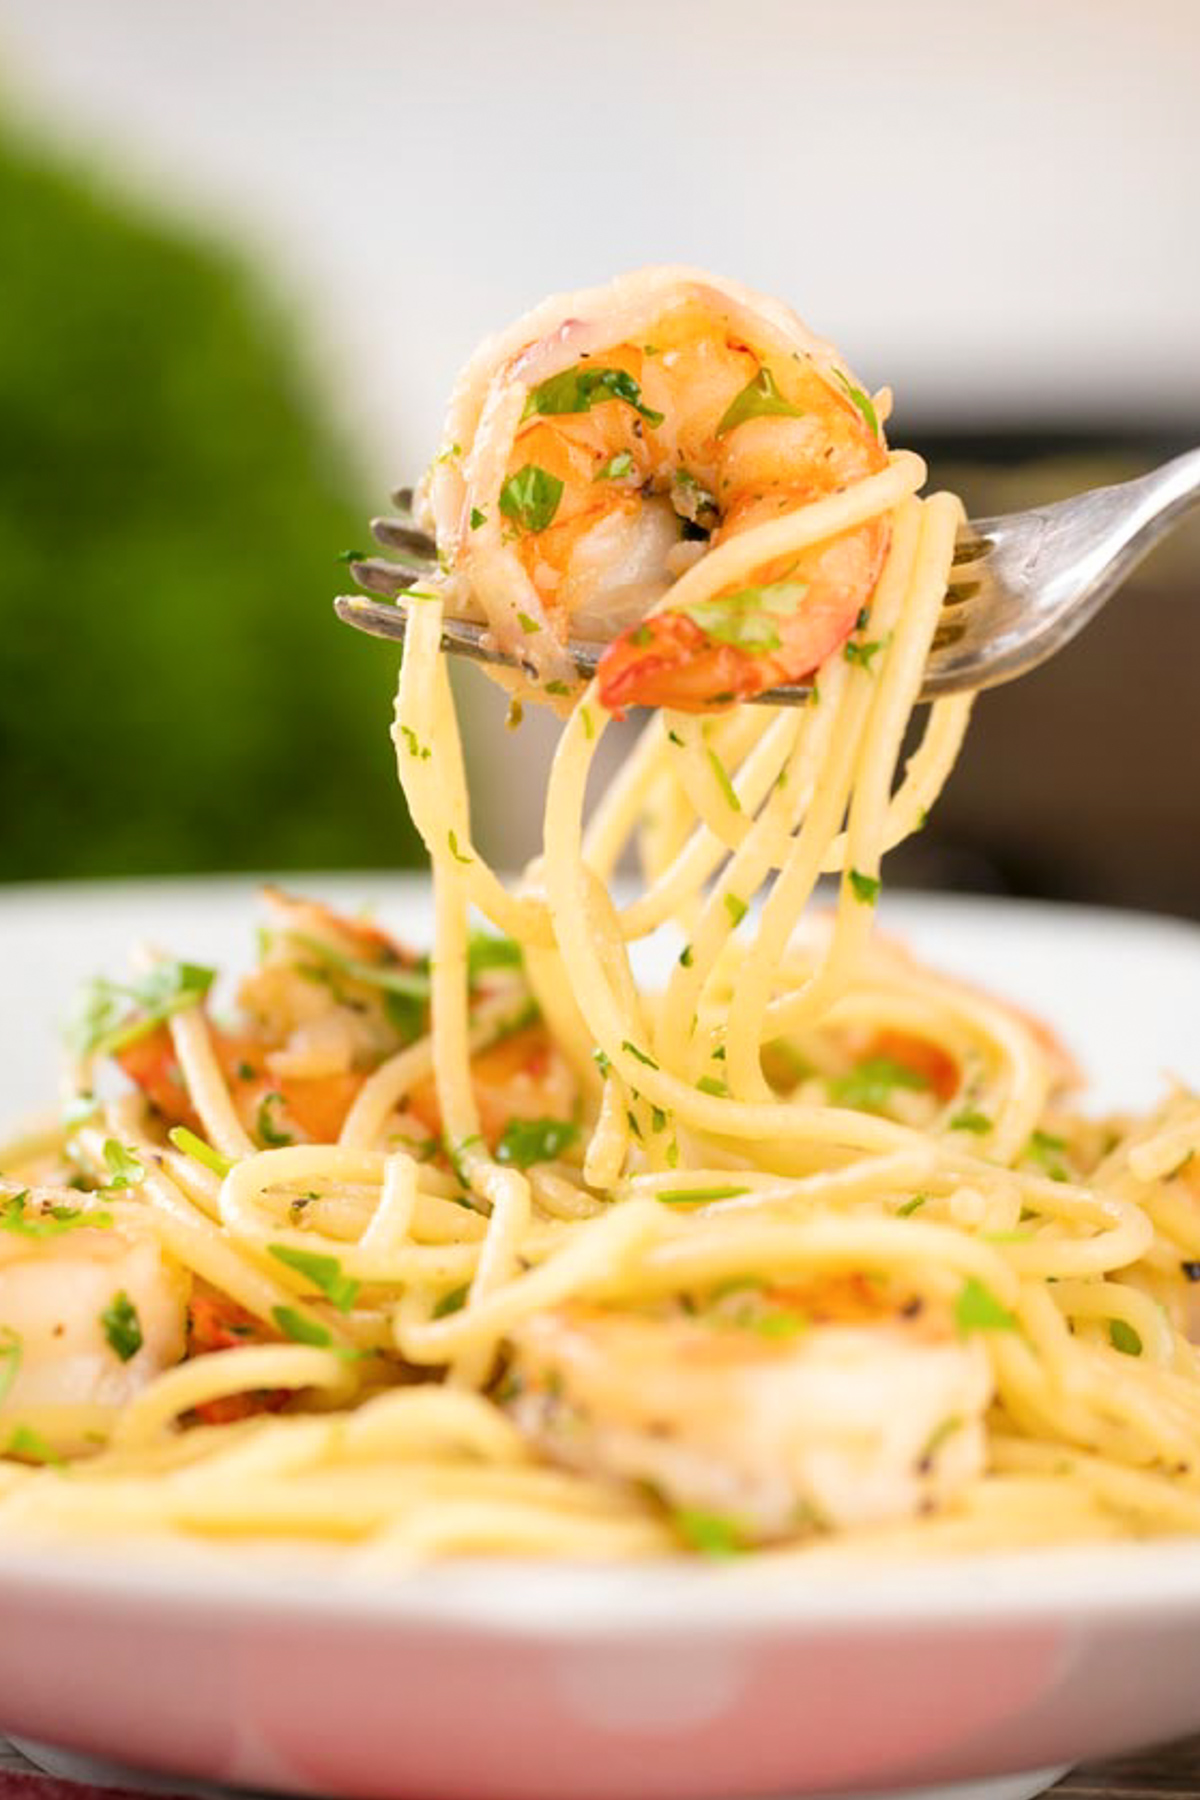 Shrimp & pasta on a fork.